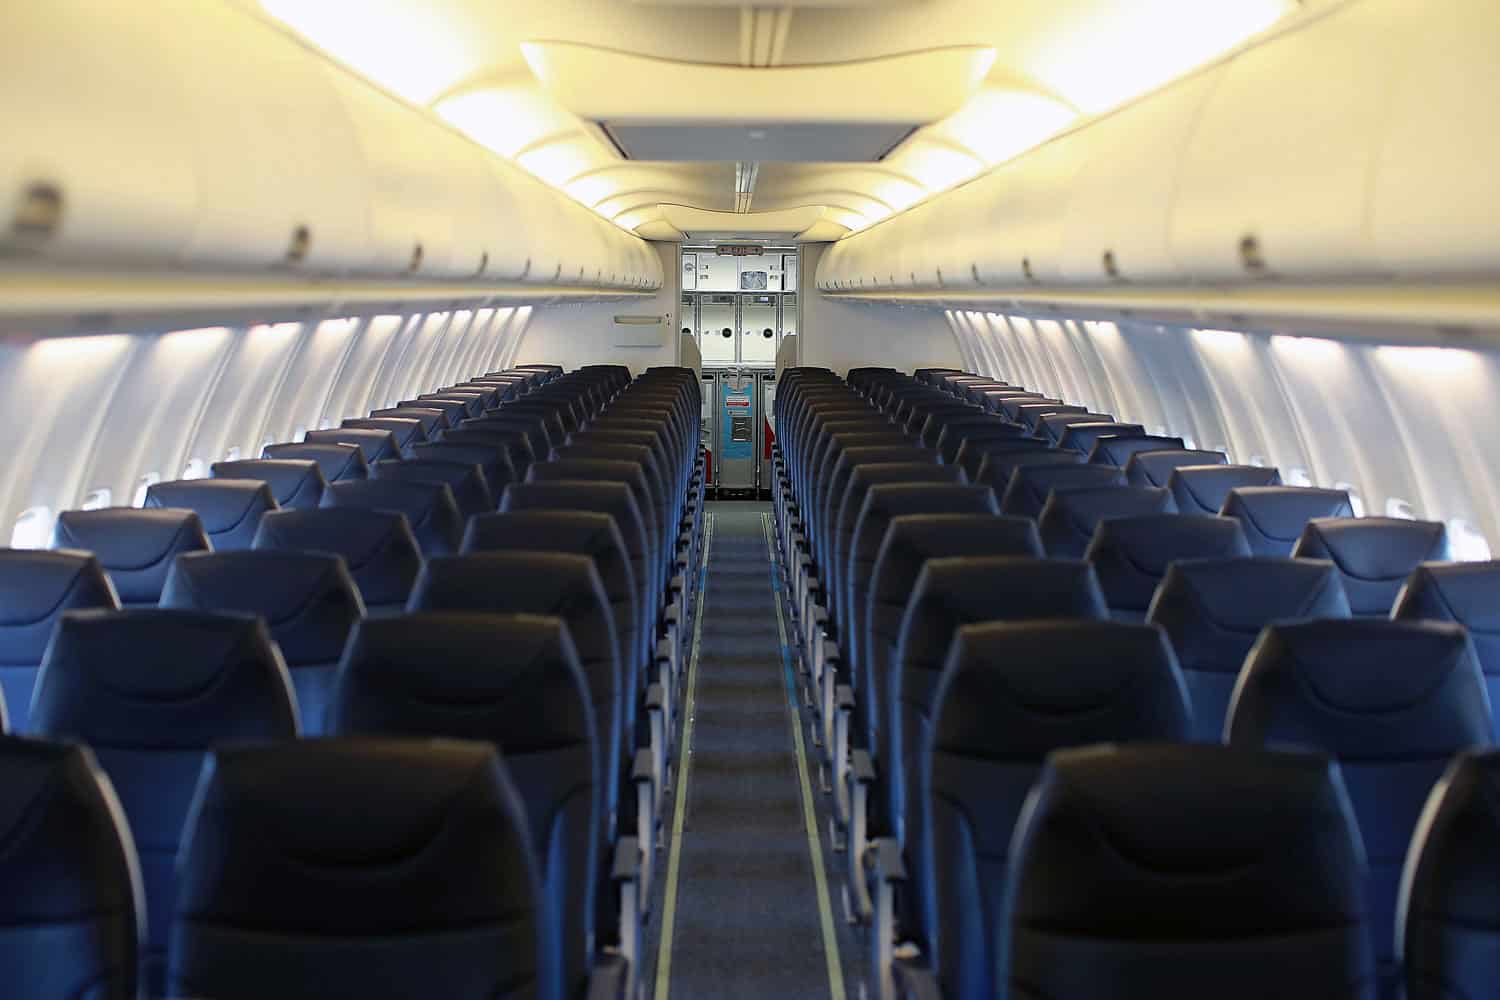 شركة الطيران الأمريكية Avelo Airlines تعلن عن خصوماتٍ تصل الى 65% على رحلاتها watanserb.com